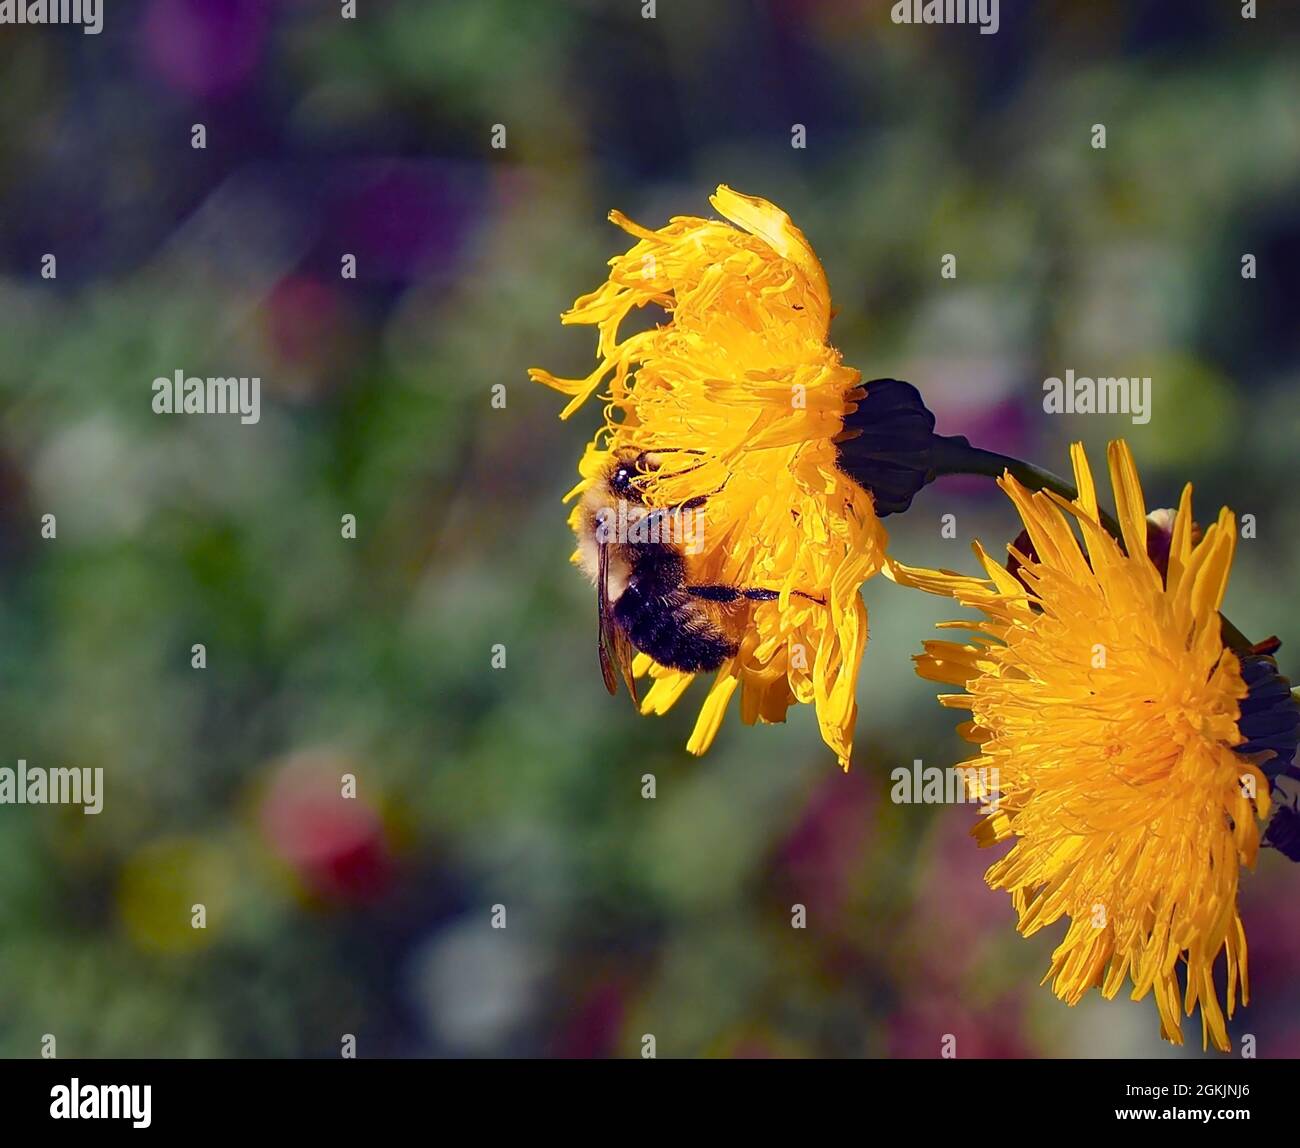 OLYMPUS DIGITALKAMERA - Nahaufnahme einer Hummel, die Nektar aus der gelben Blume auf einer auf einer Wiese wachsenden Sow-Distel-Pflanze sammelt. Stockfoto